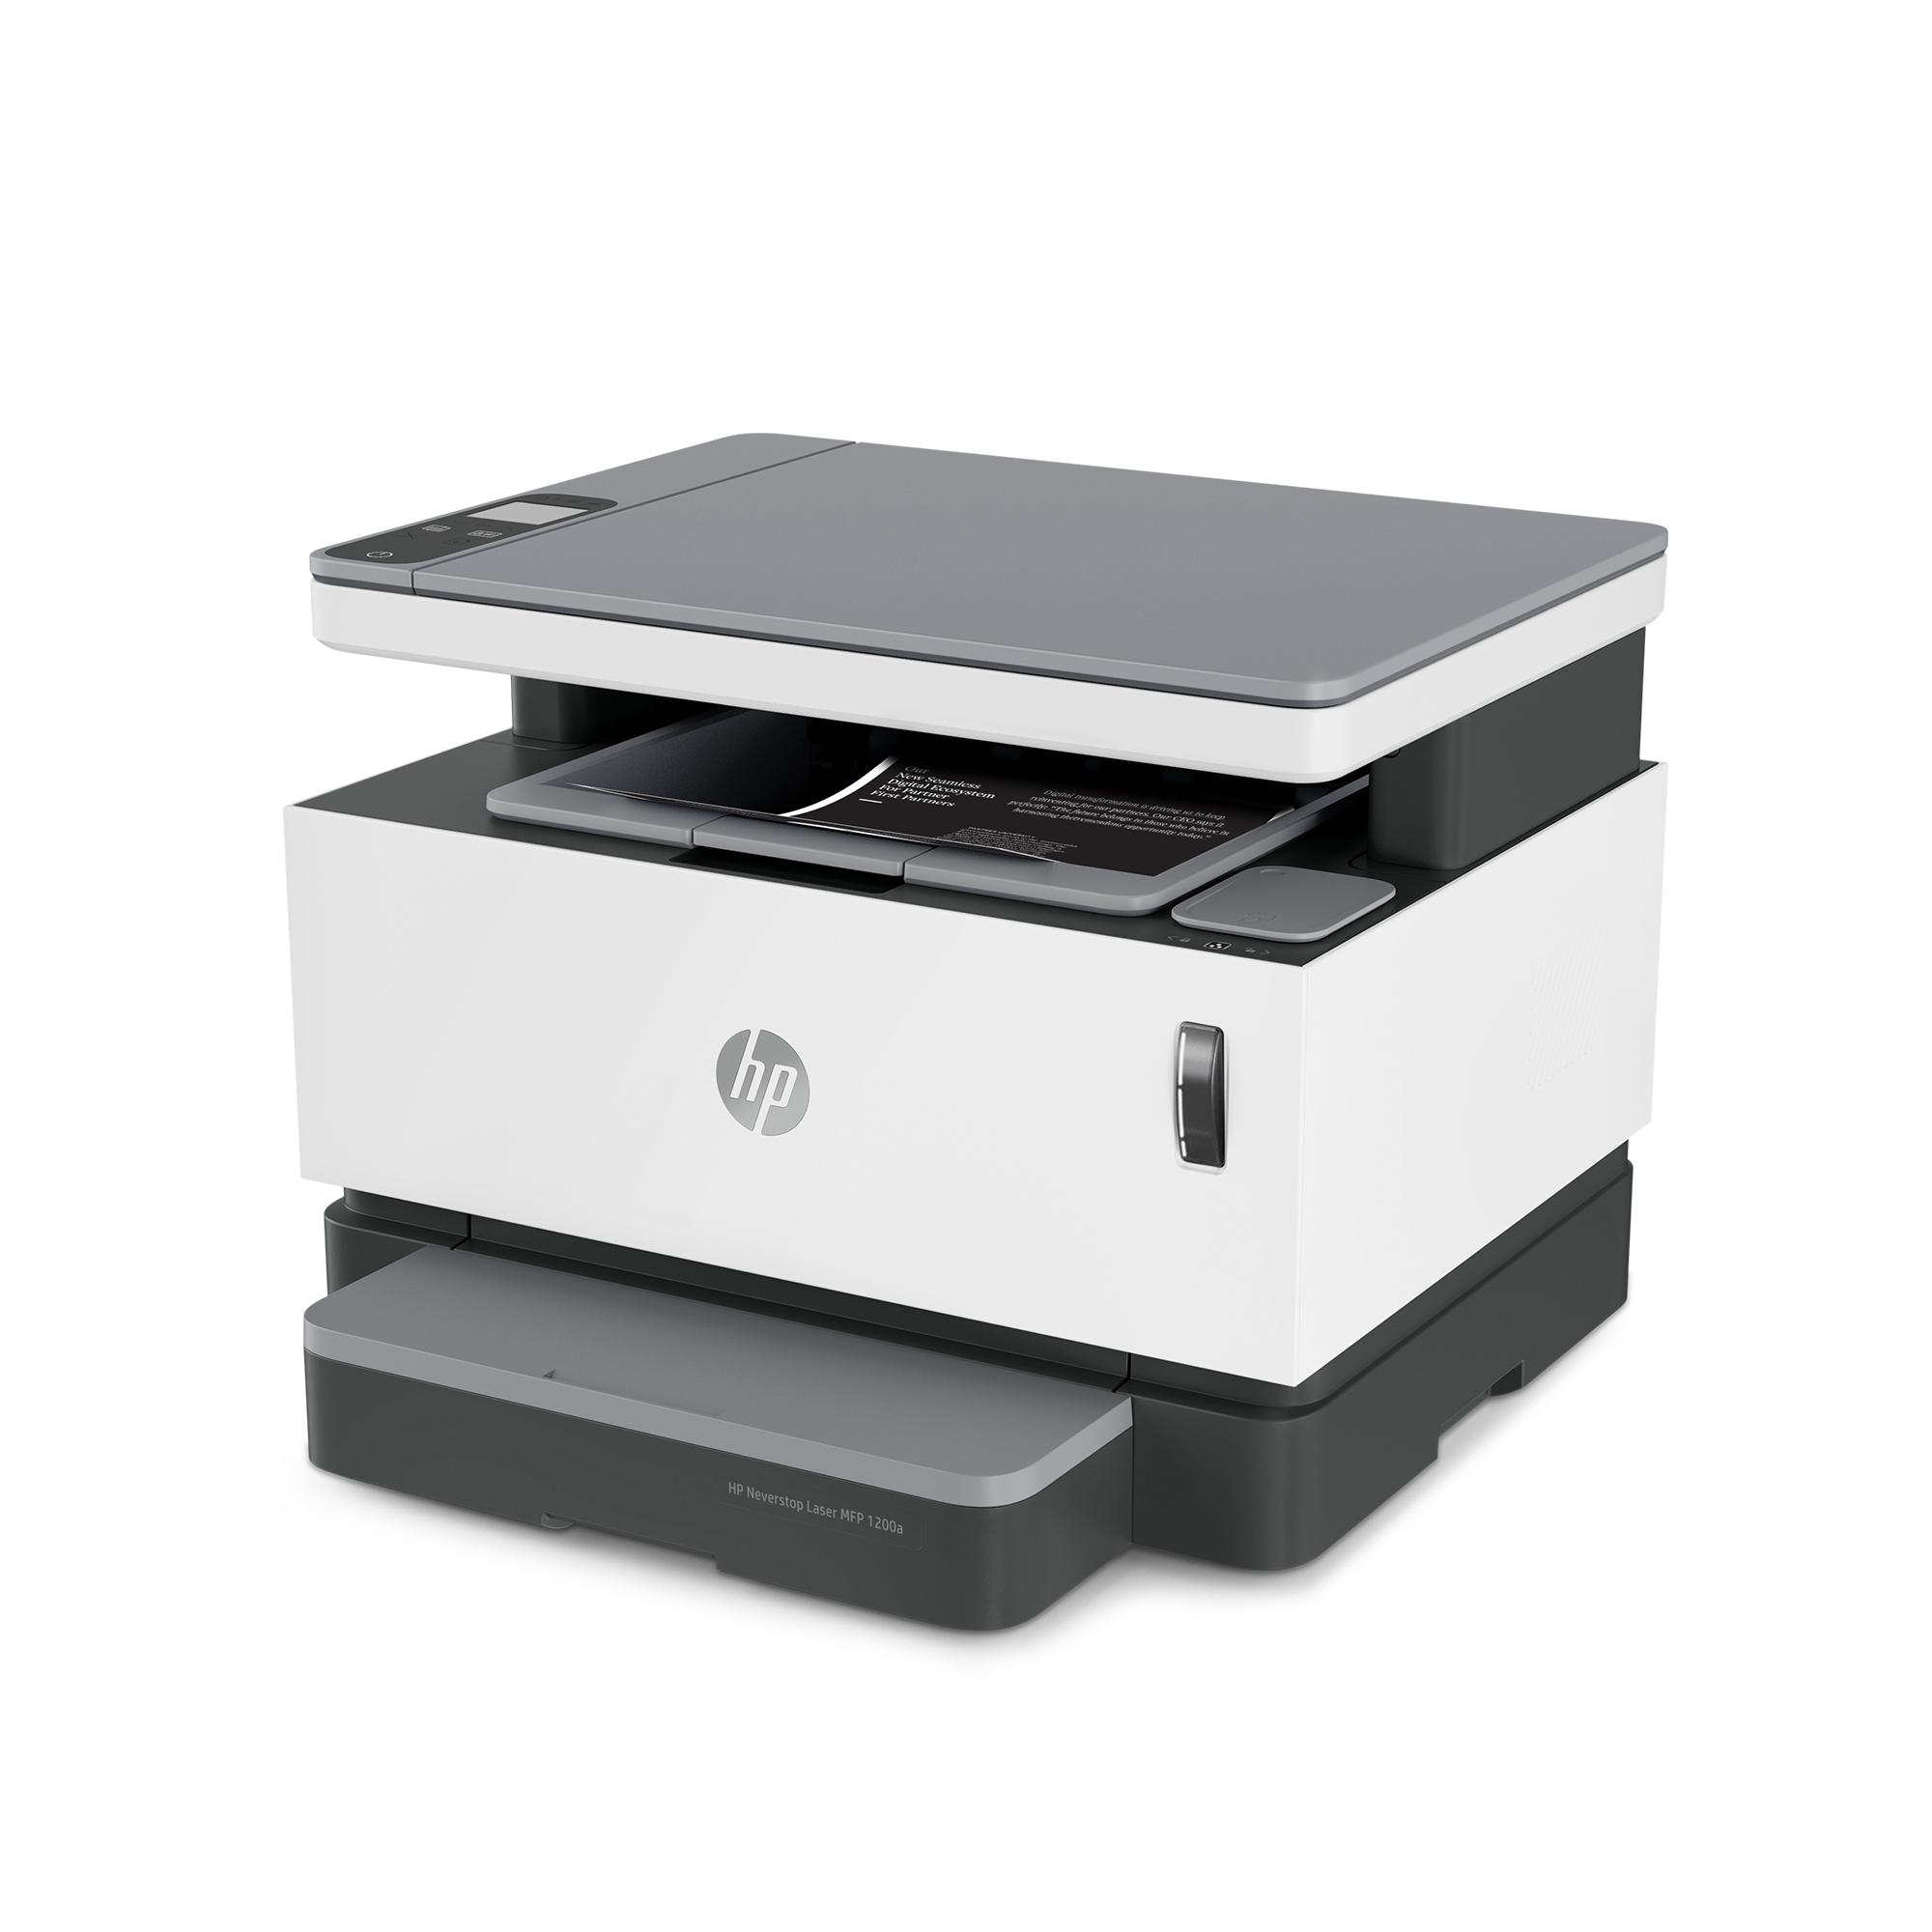 HP представила первый официально перезаправляемый лазерный принтер